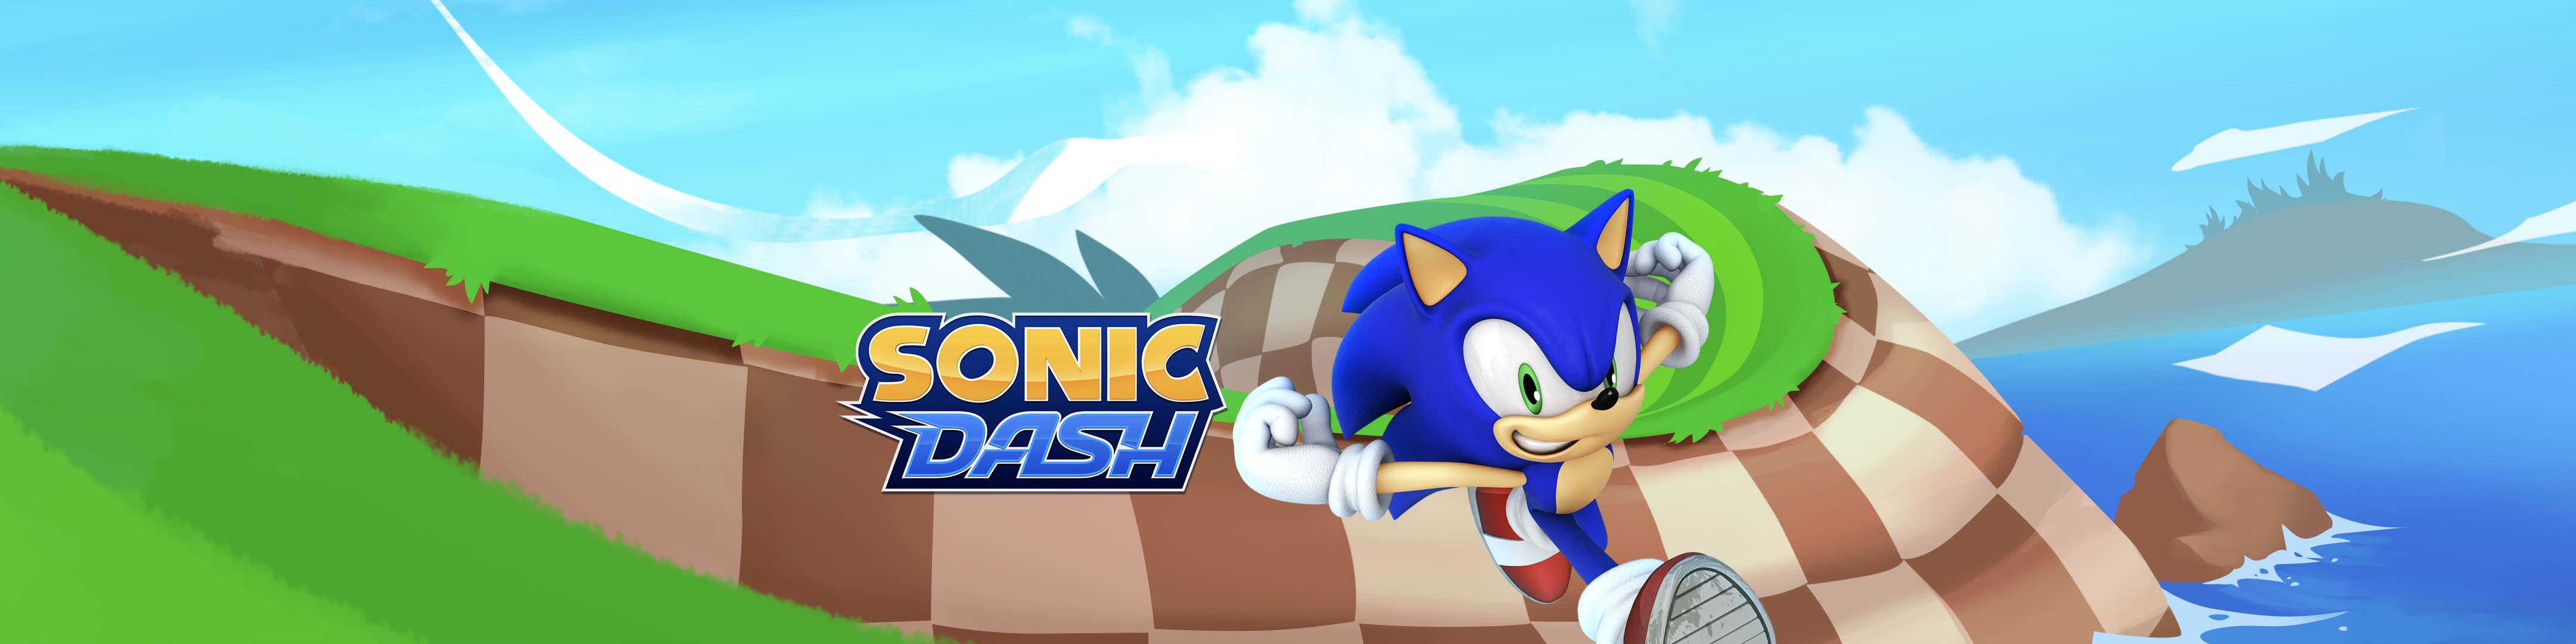 Sonic Dash Overview Apple App Store Australia - mlg runner roblox